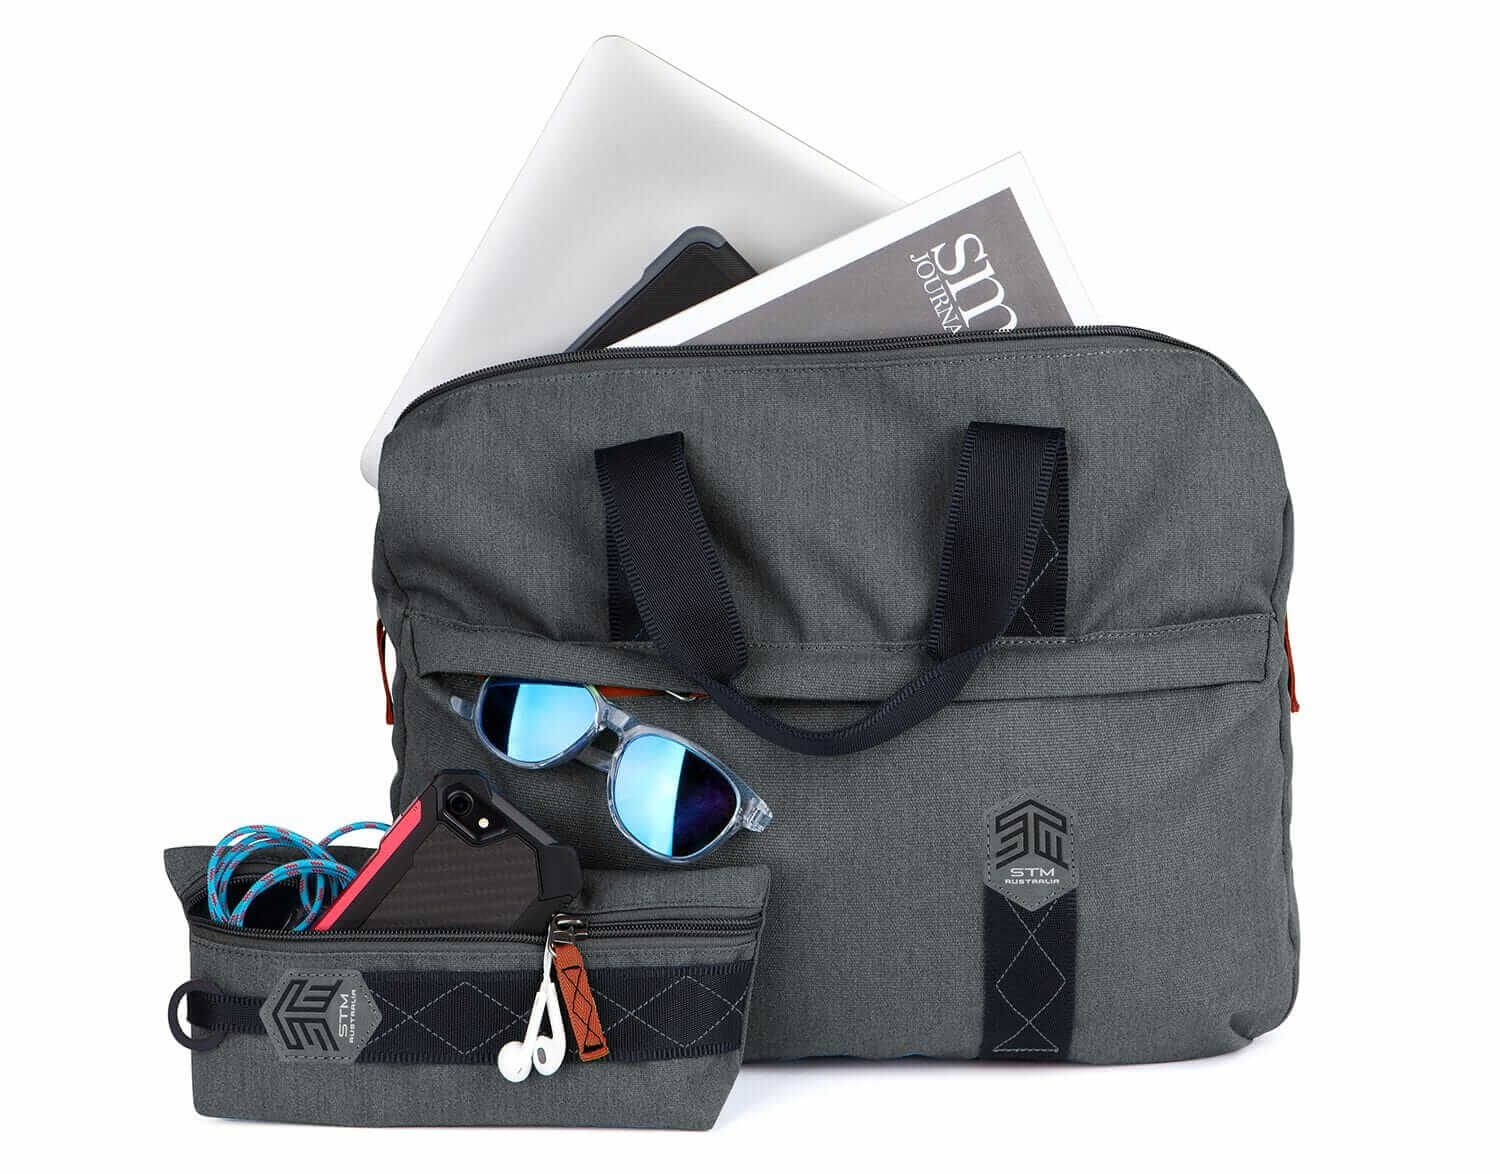 STM Judge Shoulder Bag - laptop shoulder bag